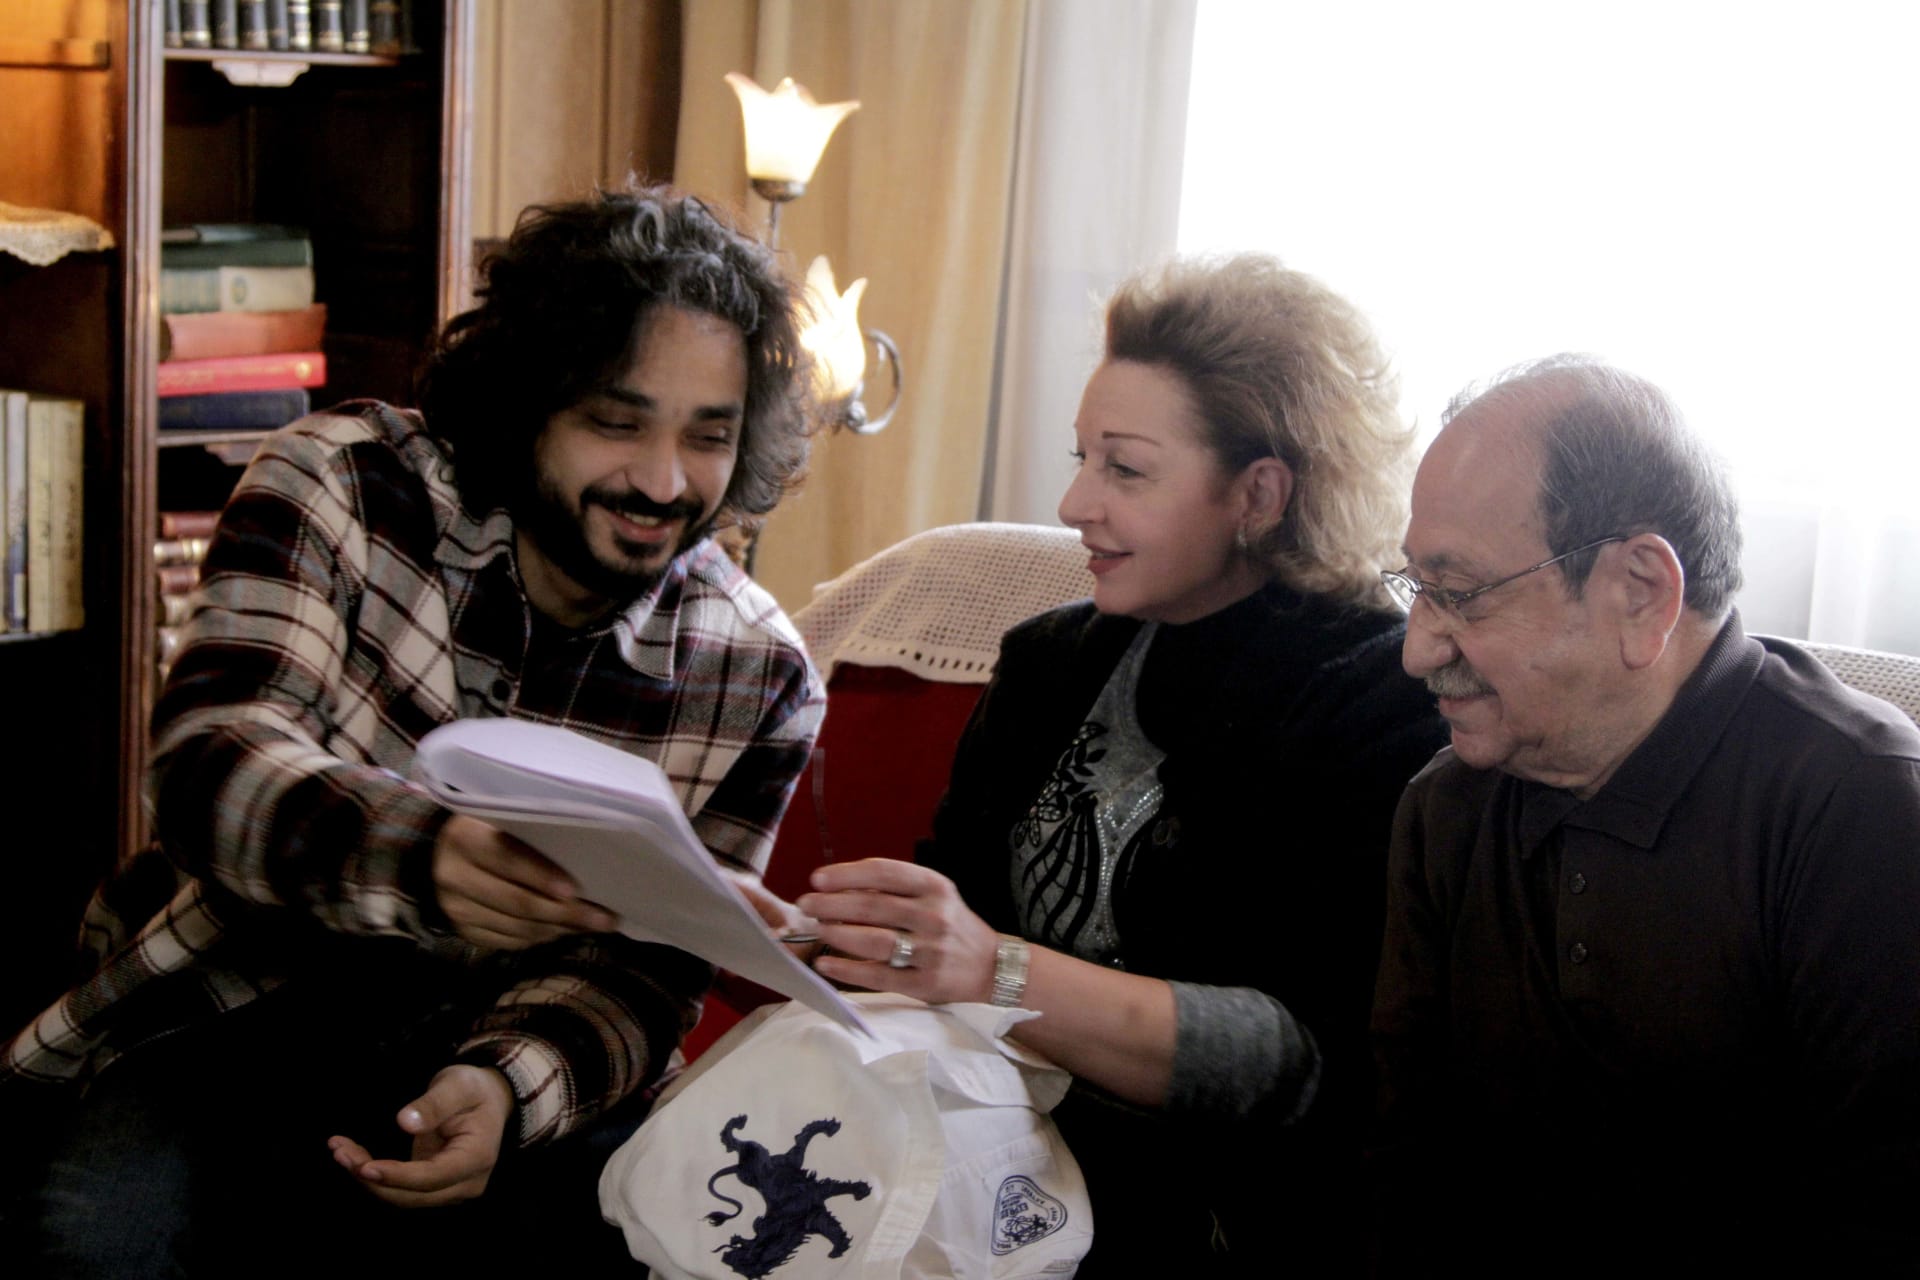 دريد لحام، نادين خوري، والمخرج باسم السلكا